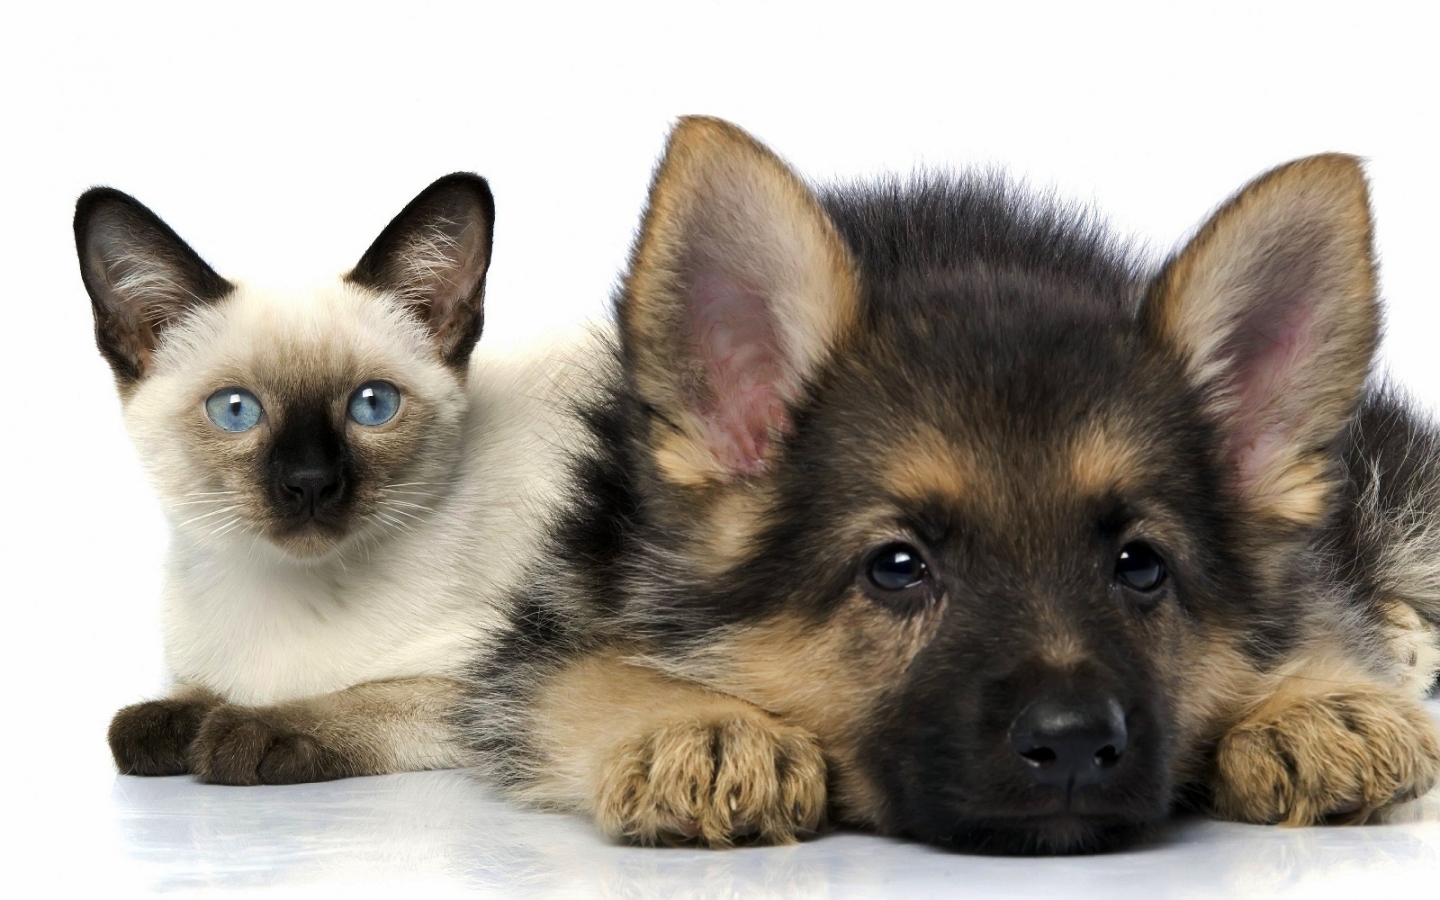 Descarga gratuita de fondo de pantalla para móvil de Animales, Perros, Gatos.